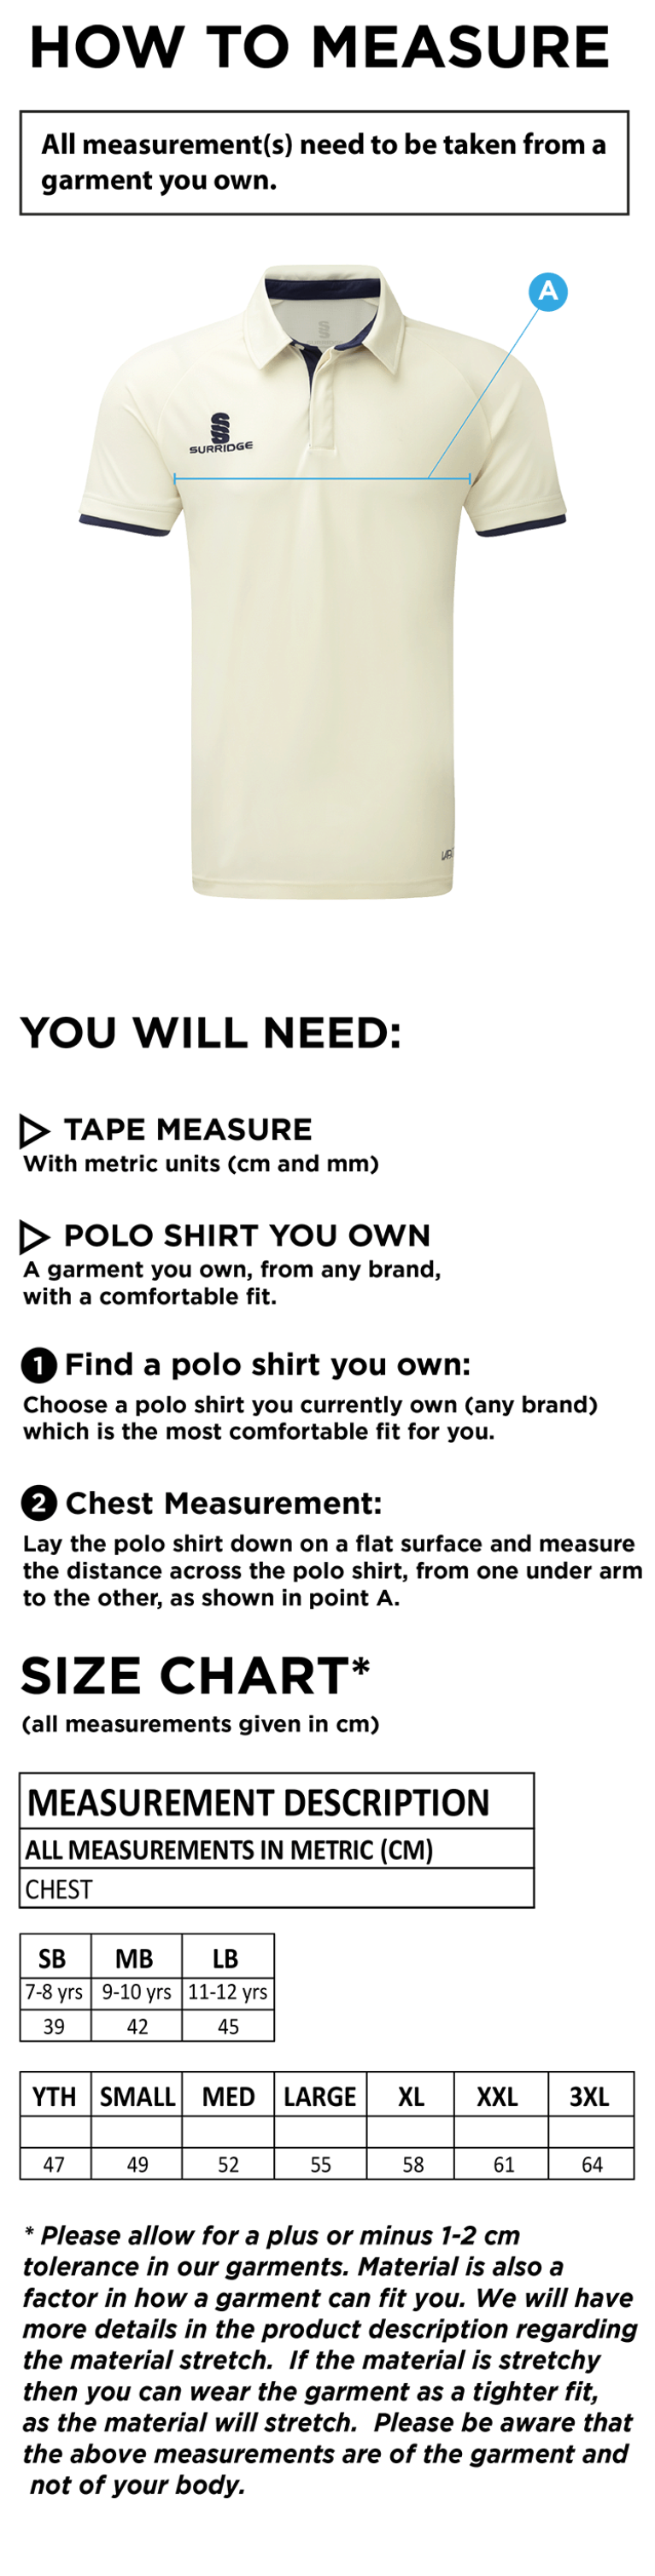 Shepley CC - Ergo Short Sleeve Shirt - Junior - Size Guide